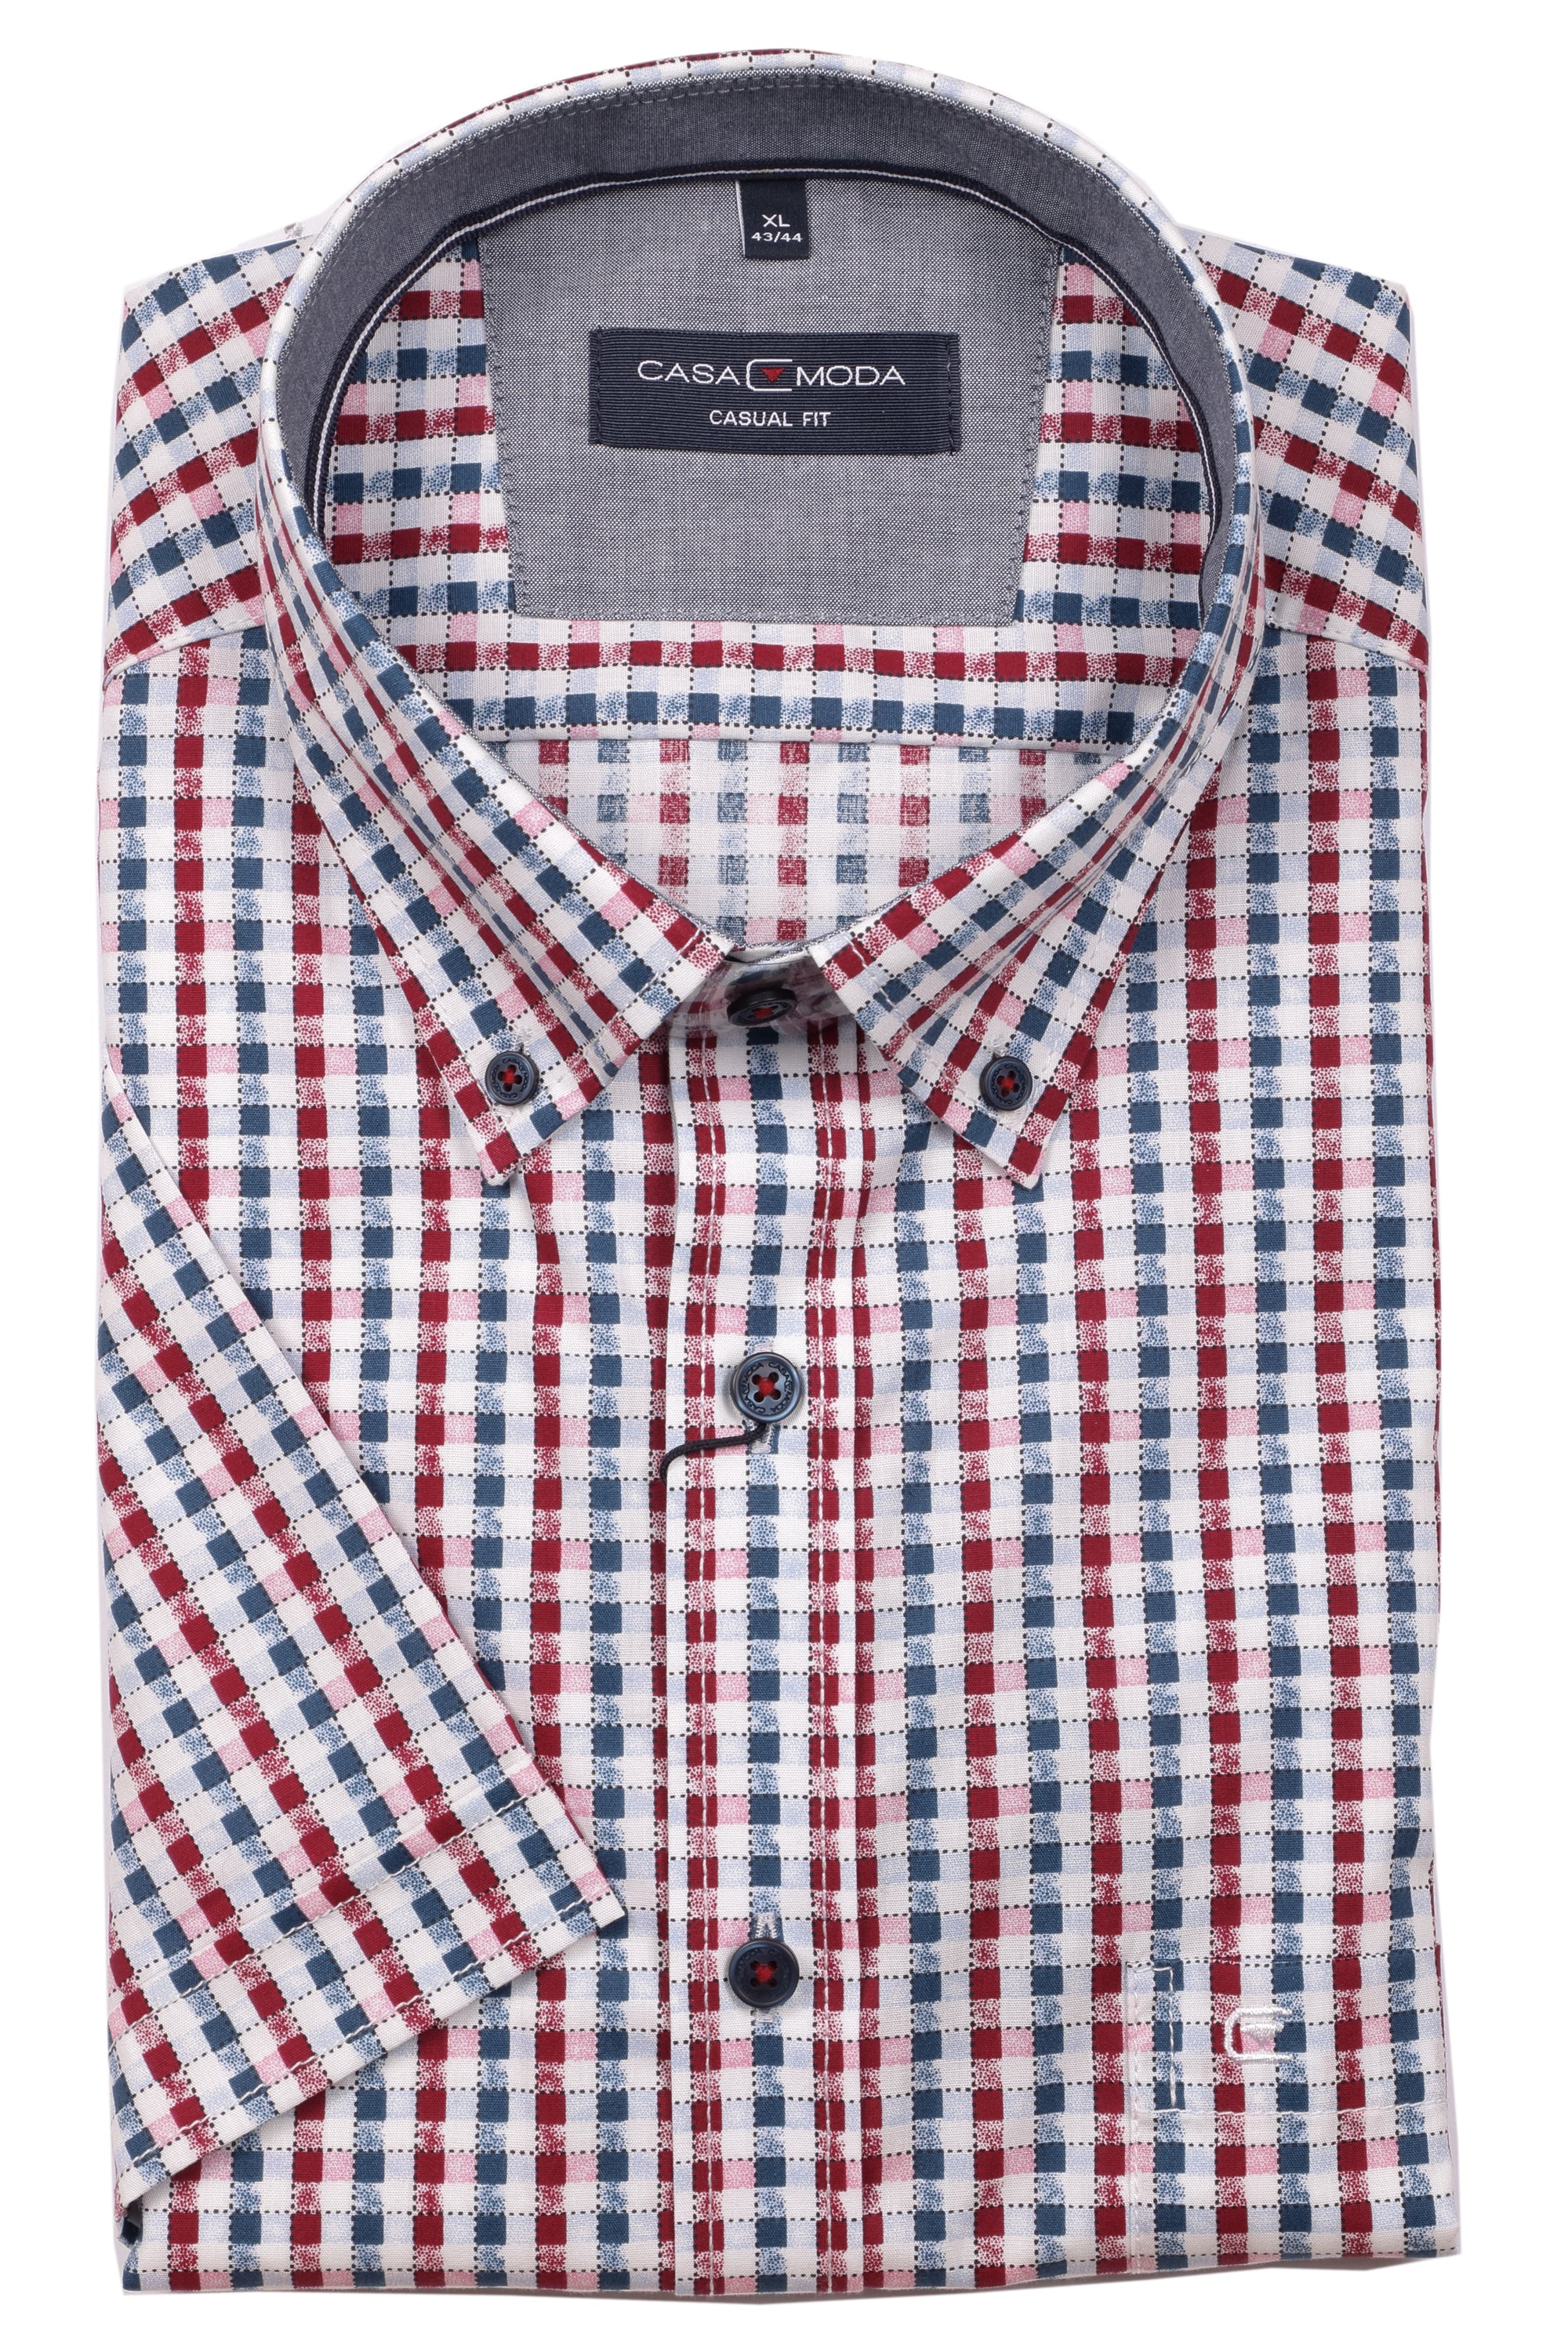 Casa Moda - Short Sleeve Cotton Shirt - Modern Casual Fit - 903348000 